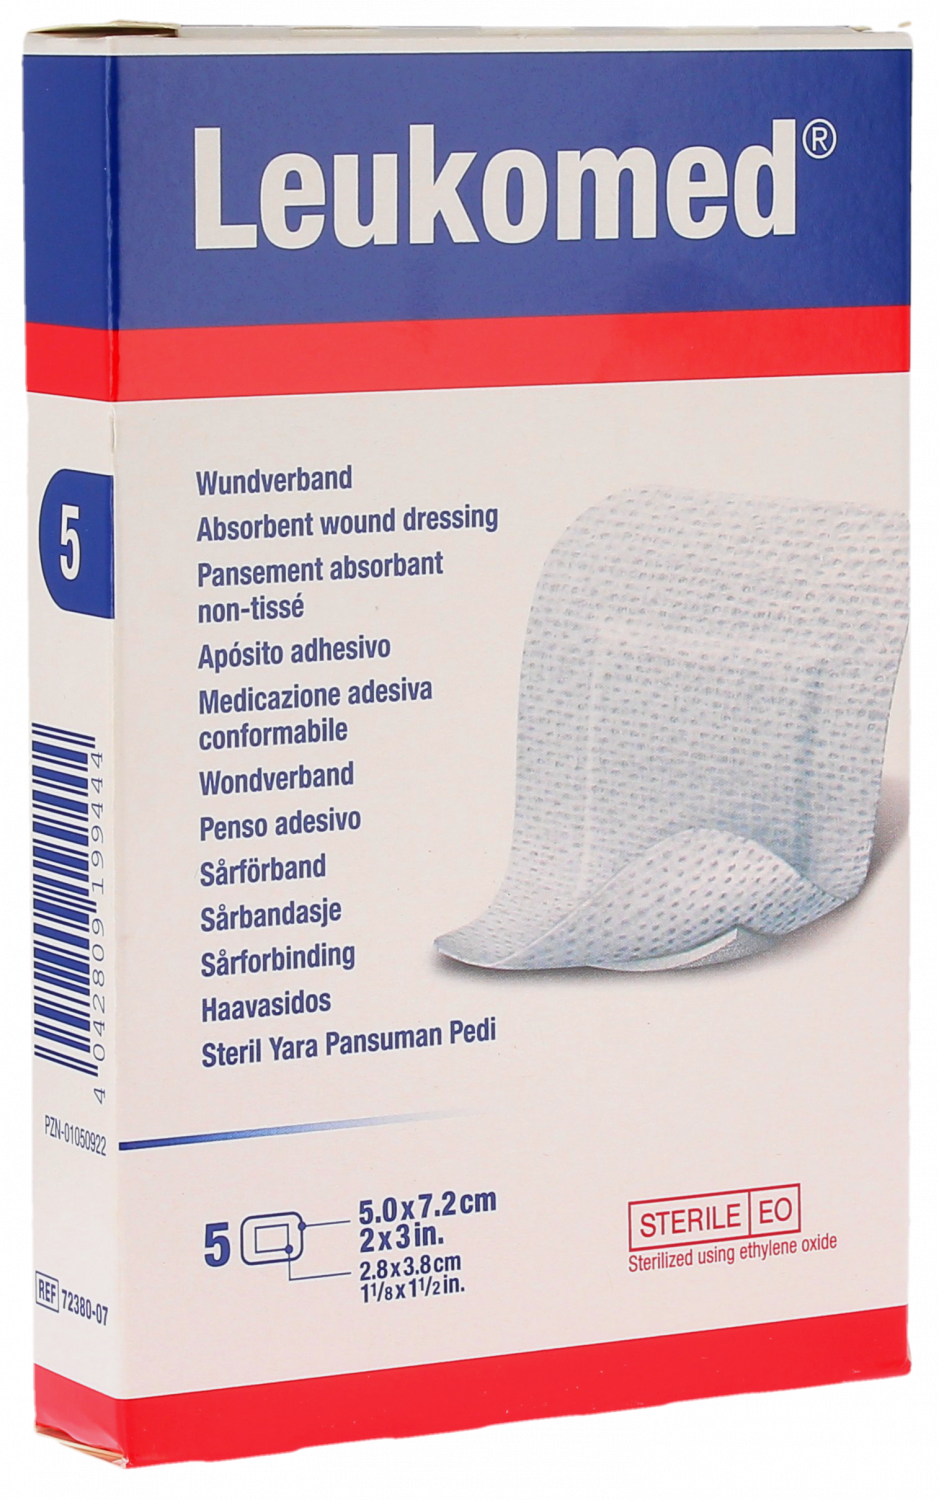 Leukomed pansements absorbants non-tissés Bsn médical - boite de 5 pansements de 5.0x7.2cm